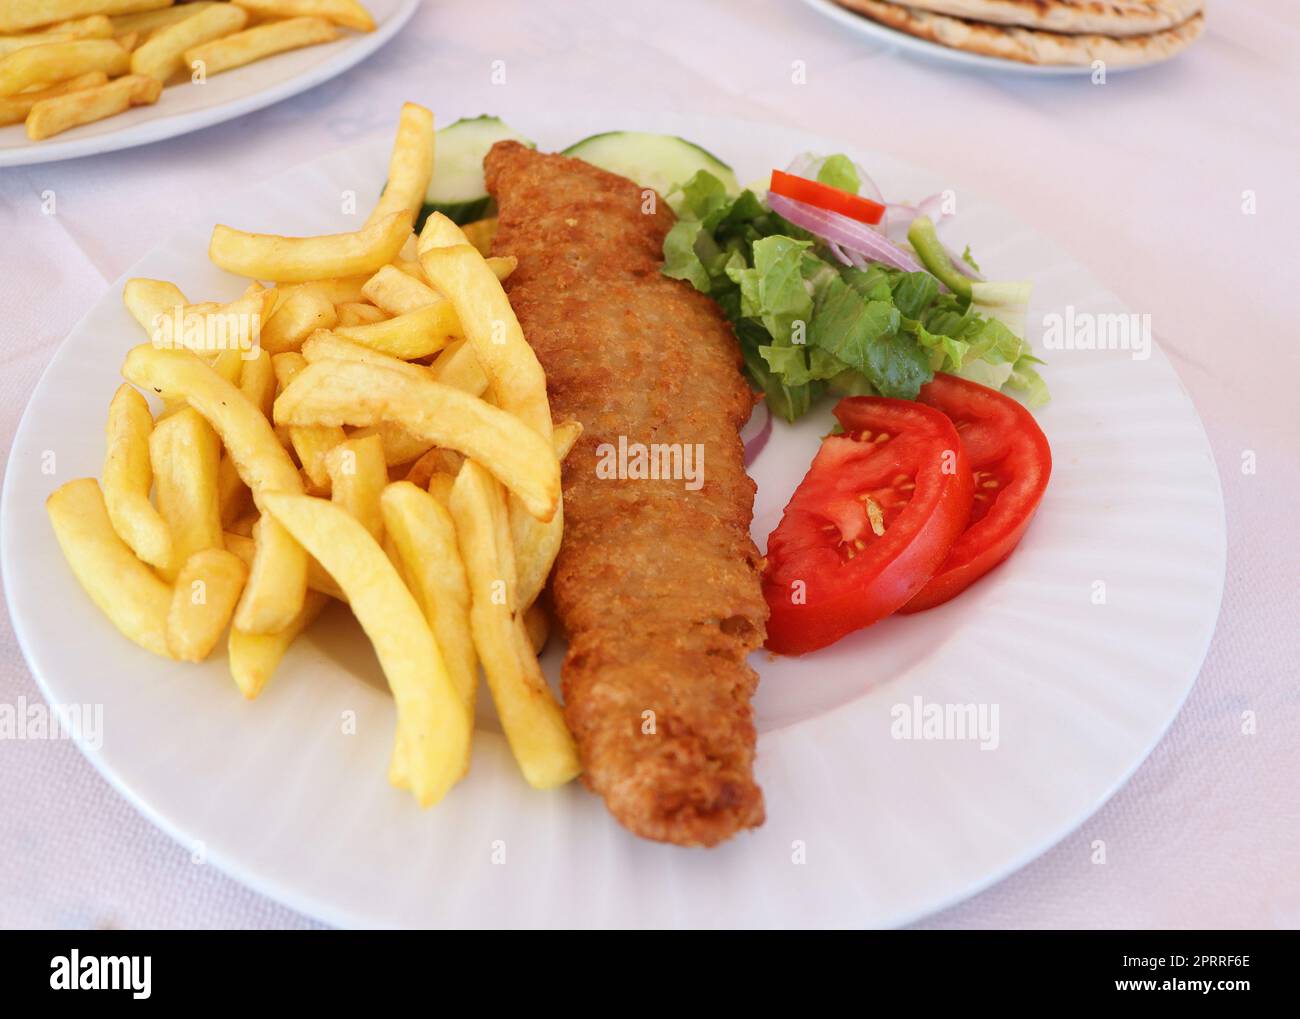 Poisson et frites. Filet de poisson frits et frites servi sur une assiette blanche avec des légumes Banque D'Images